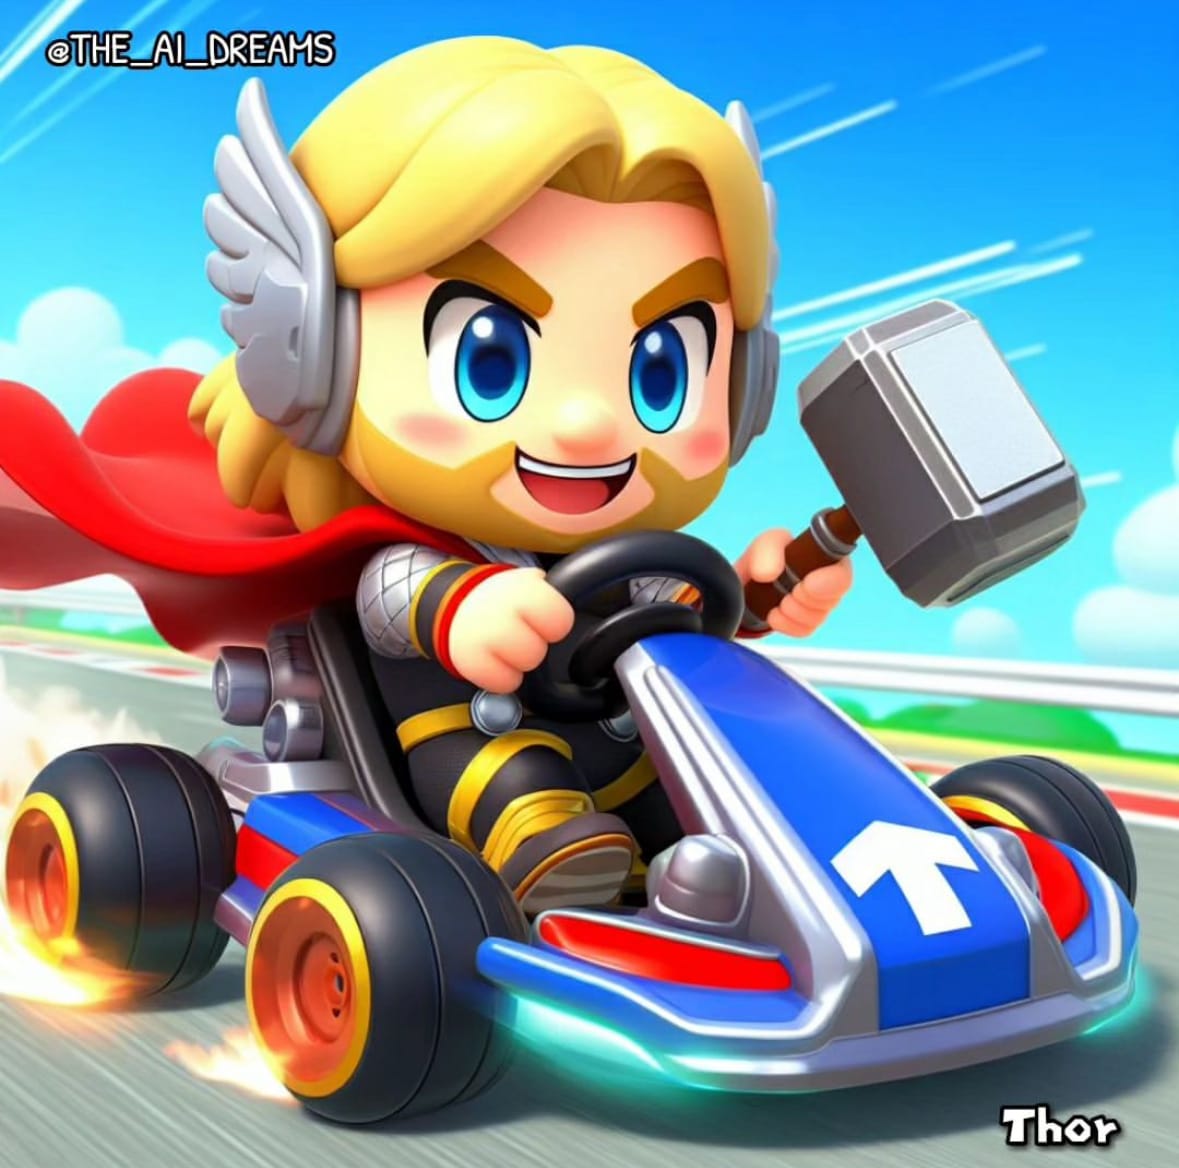 ตัวละครจากหนังและการ์ตูนดังในเกมแข่งรถ Mario Kart aiart